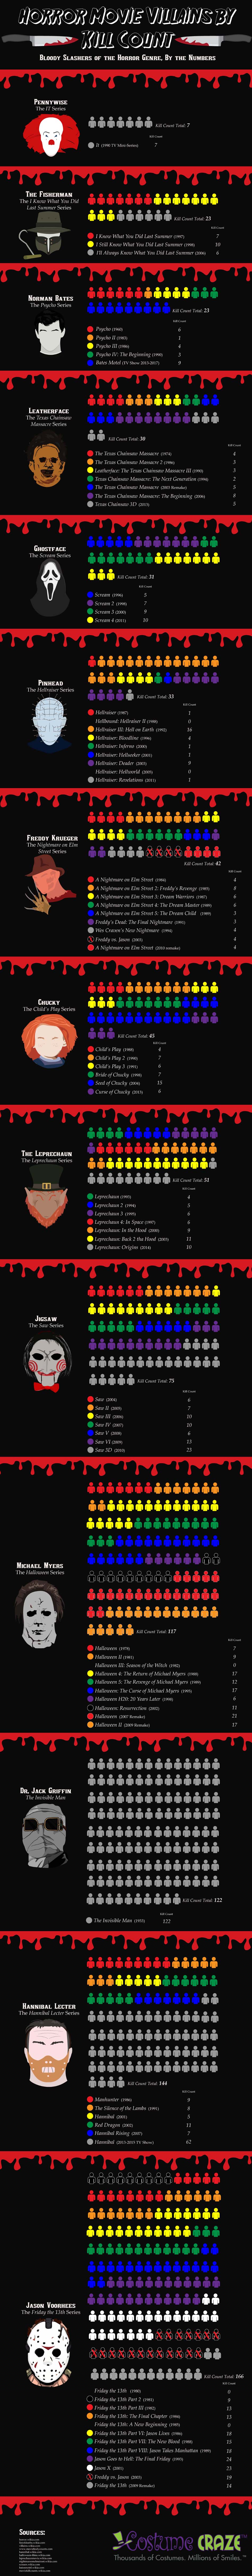 Horror Movie Villain Kill Count